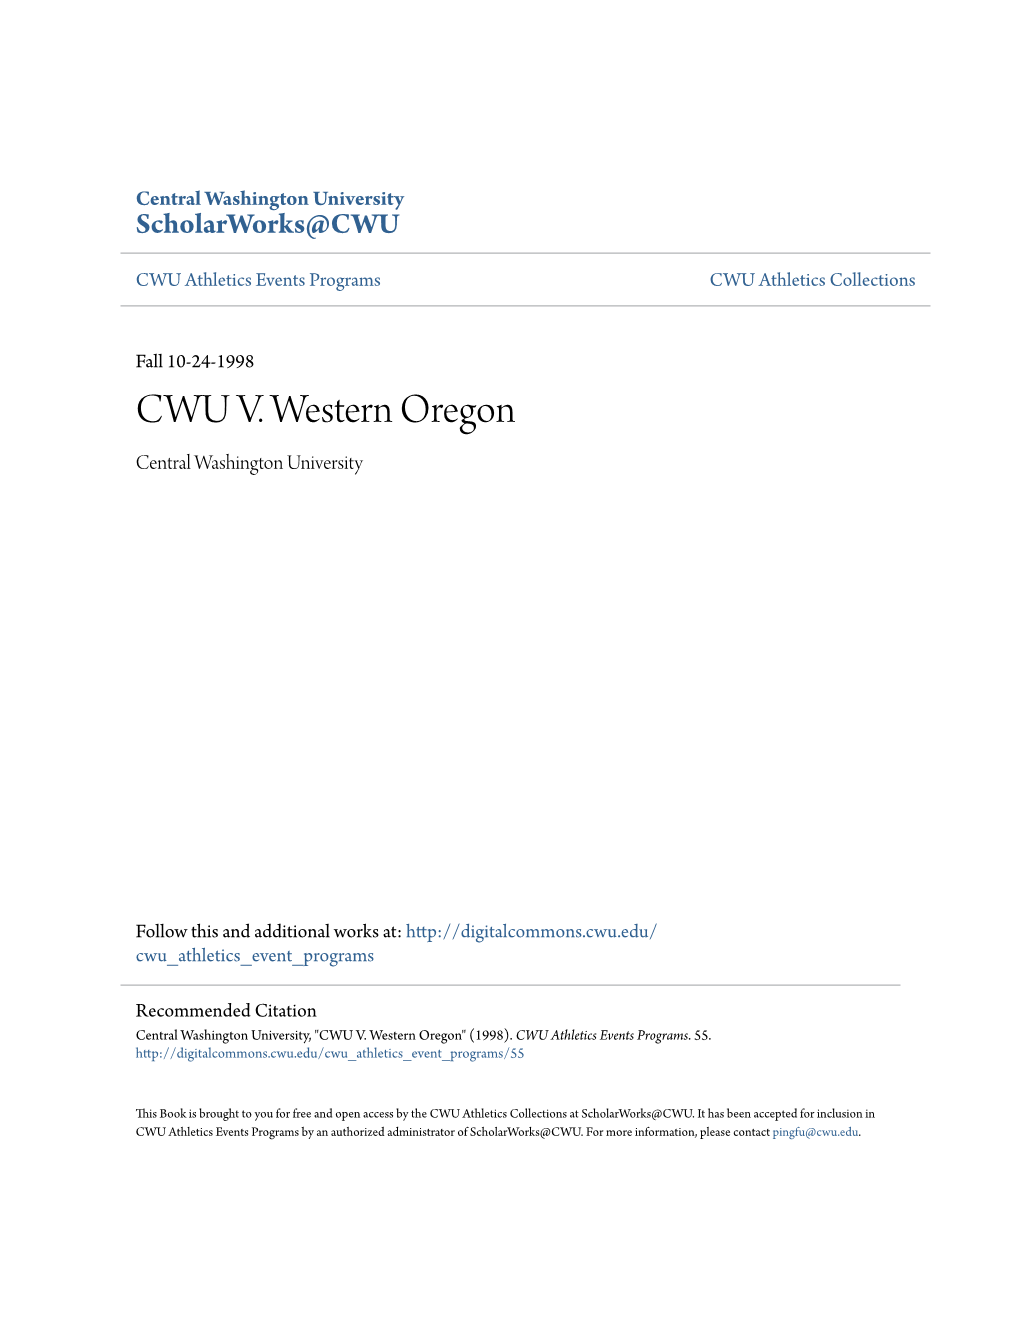 CWU V. Western Oregon Central Washington University